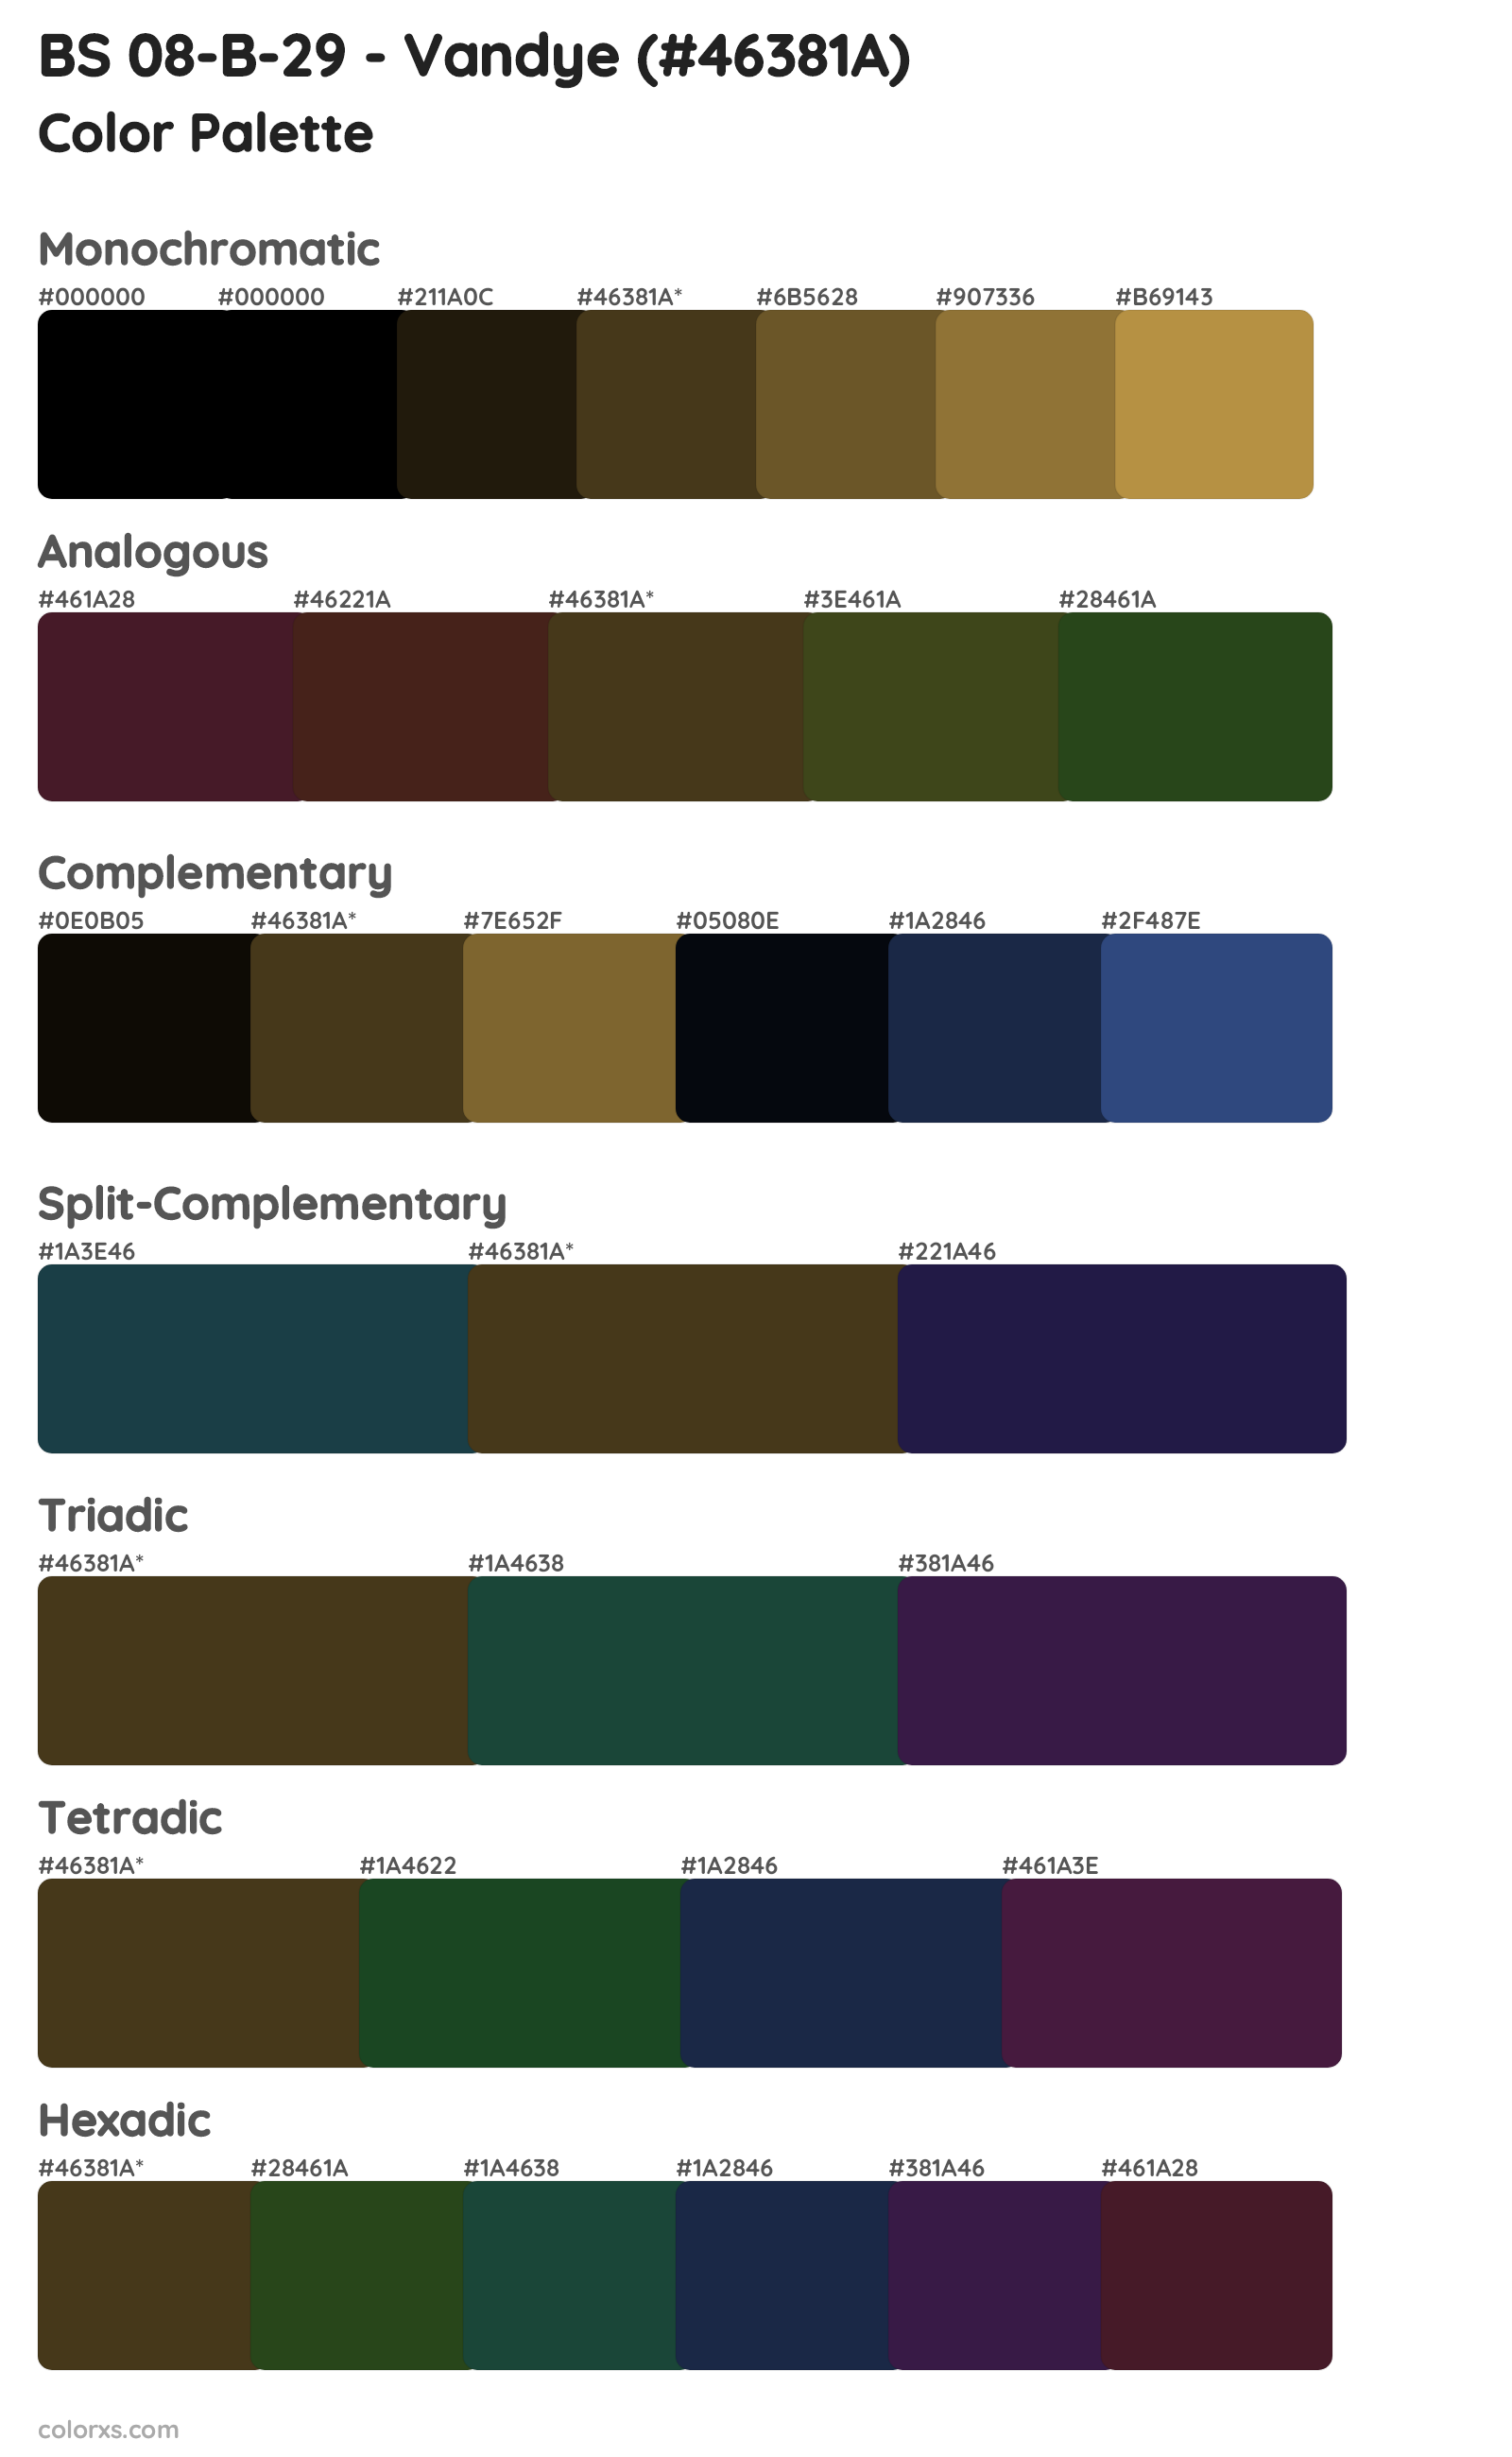 BS 08-B-29 - Vandye Color Scheme Palettes